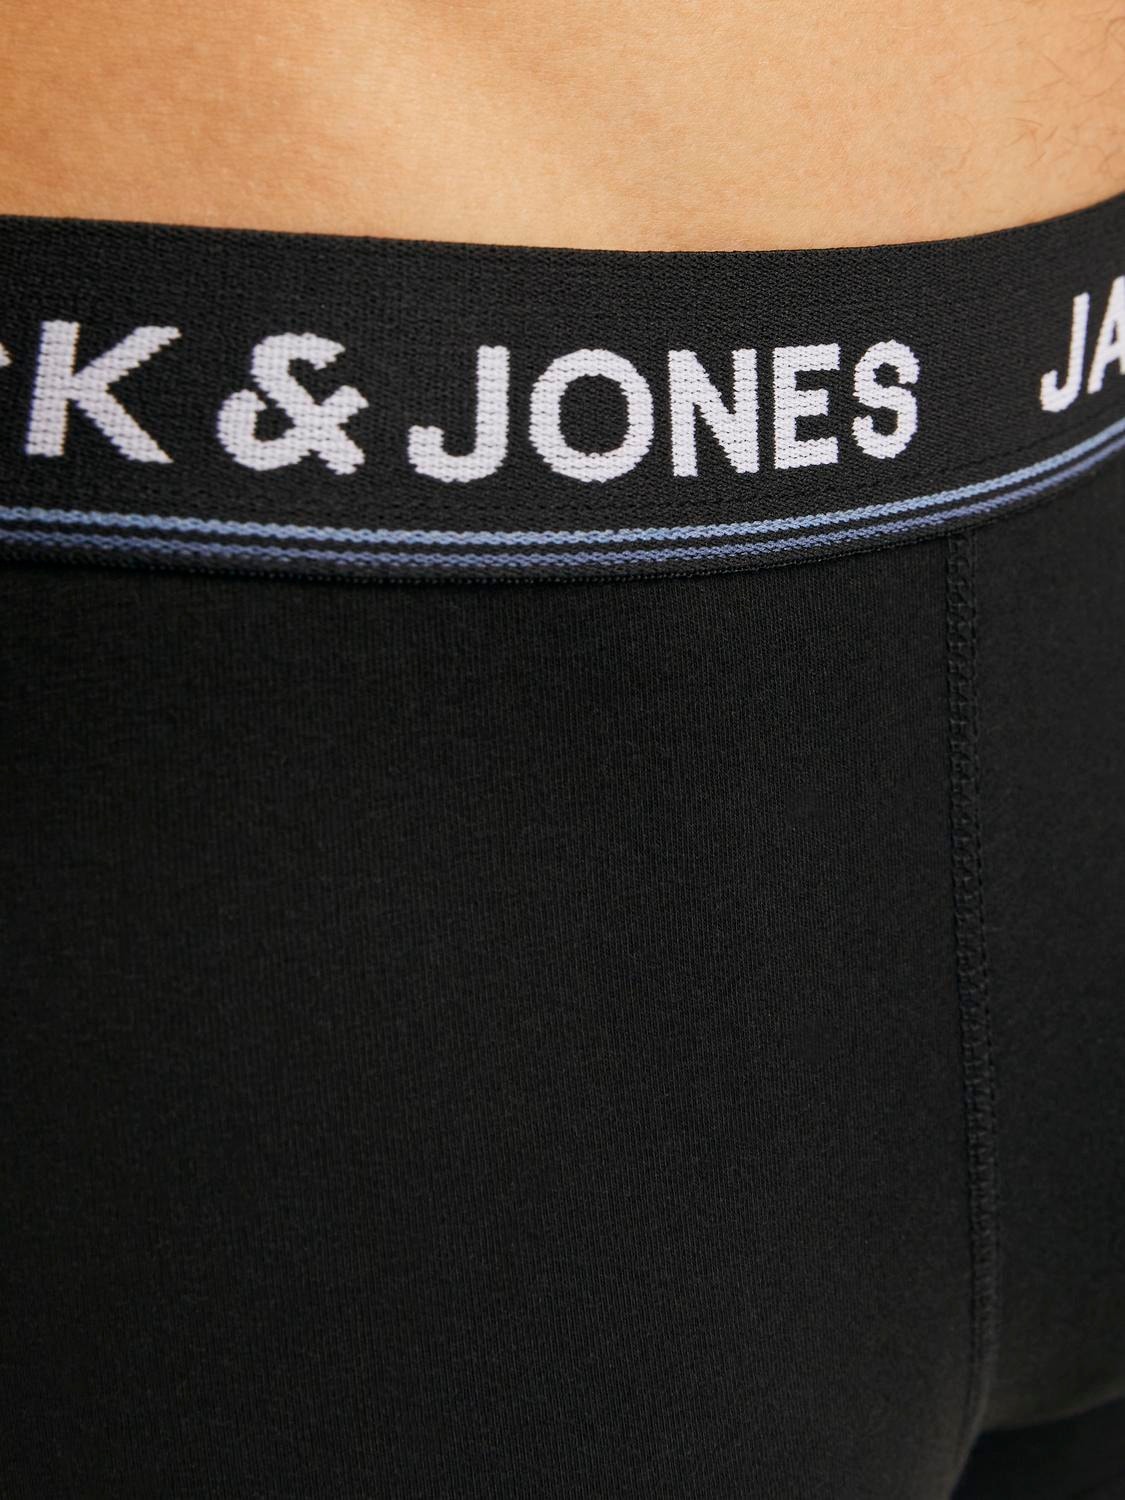 Jack & Jones Confezione da 5 Boxer -Black - 12265503